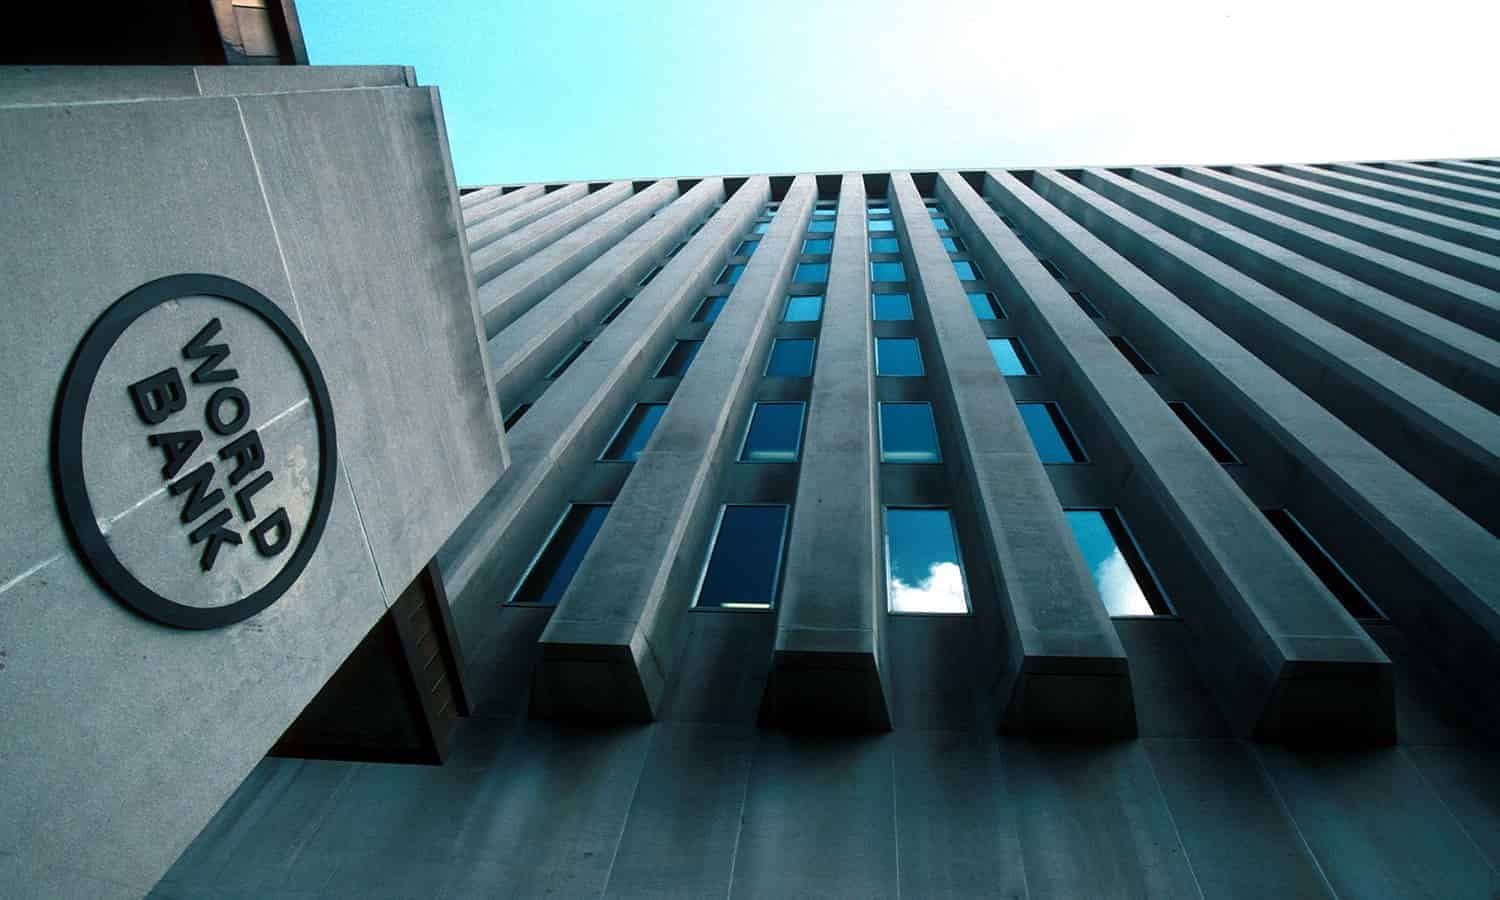 البنك الدولي يخفض توقعاته للنمو في مصر العام المالي الحالي مجددا